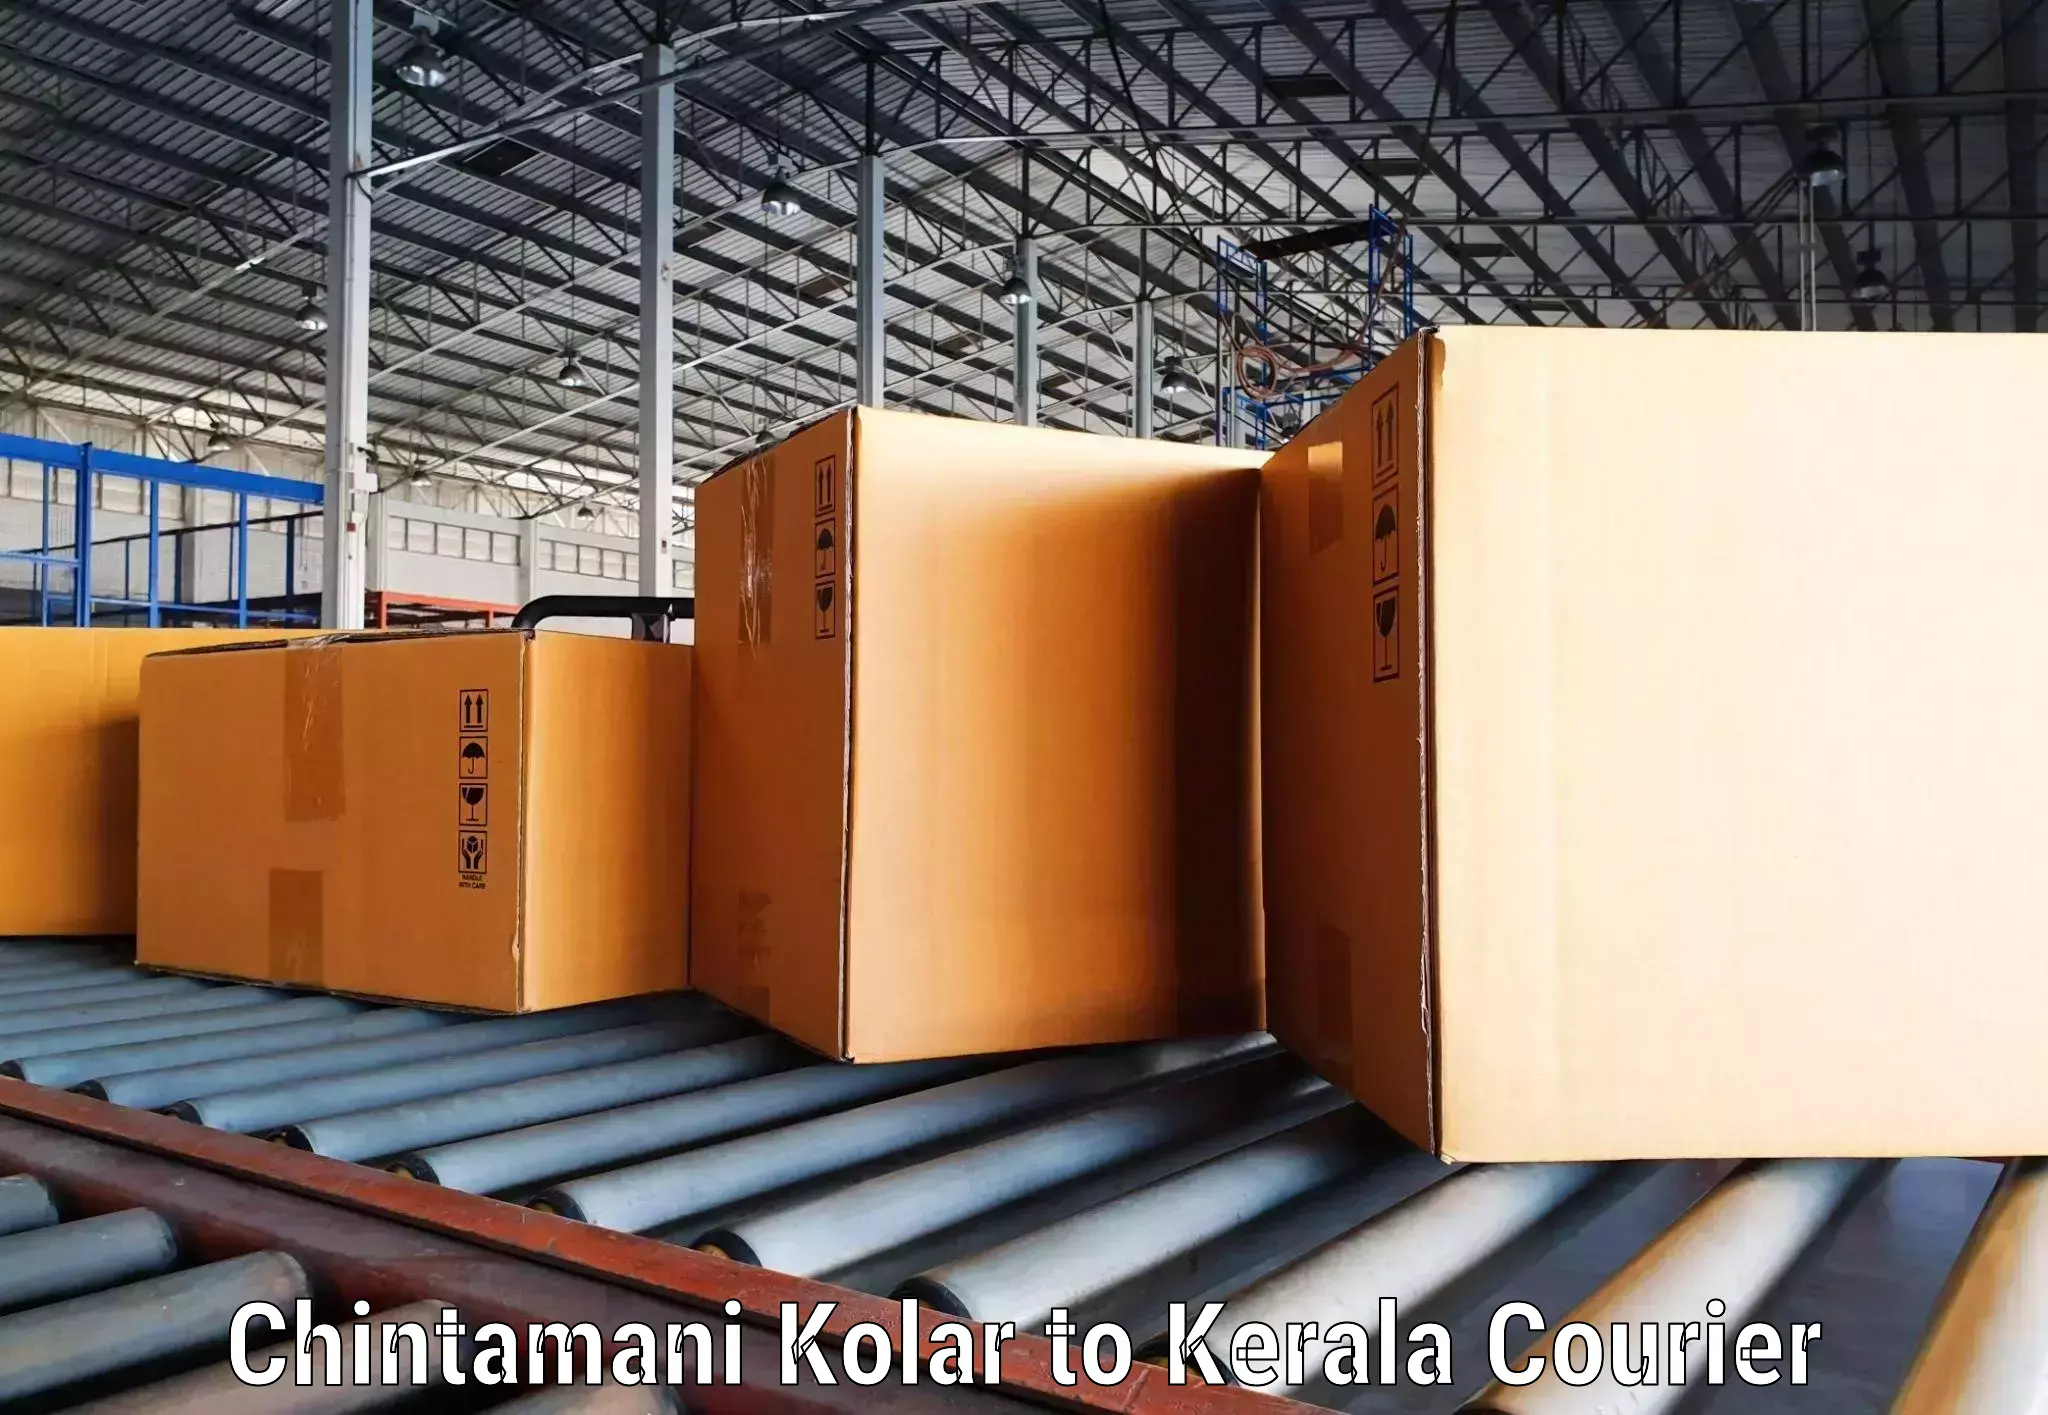 High-speed parcel service Chintamani Kolar to Palai